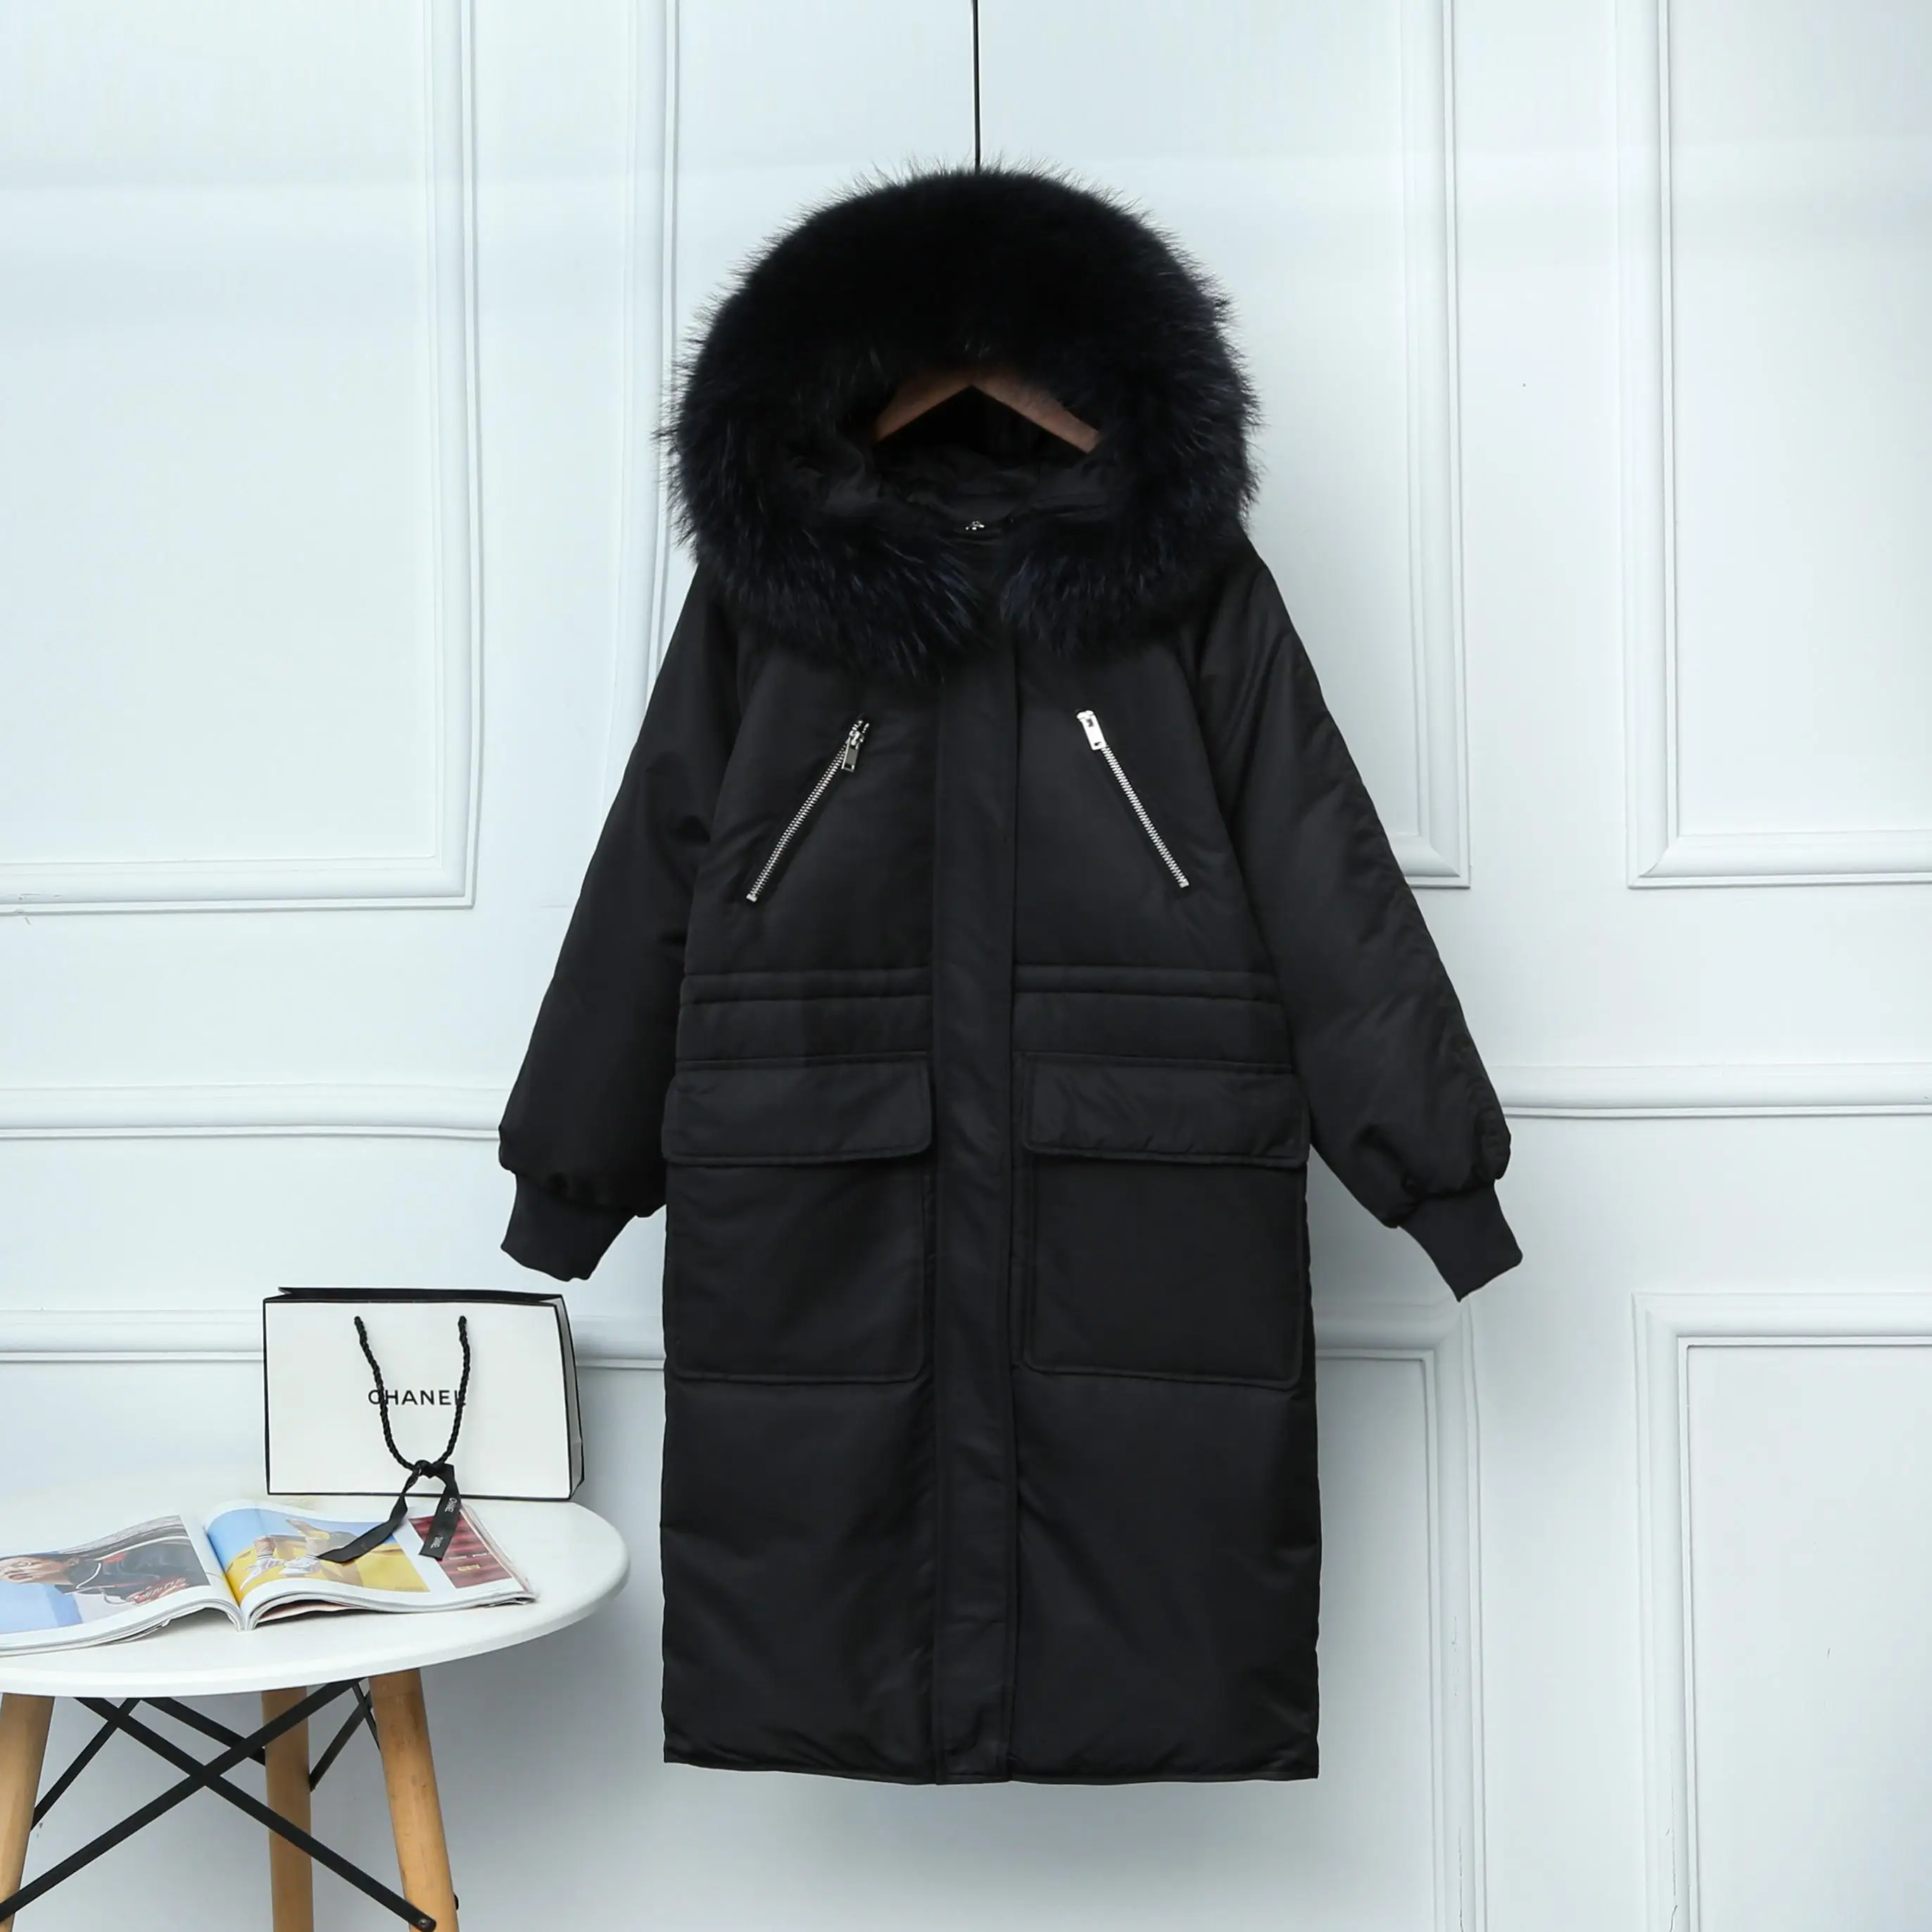 Fitaylor большой натуральный мех енота с капюшоном зимняя куртка для женщин 90% белый утиный пух толстые парки теплый пояс завязывать снег пальто - Цвет: Черный